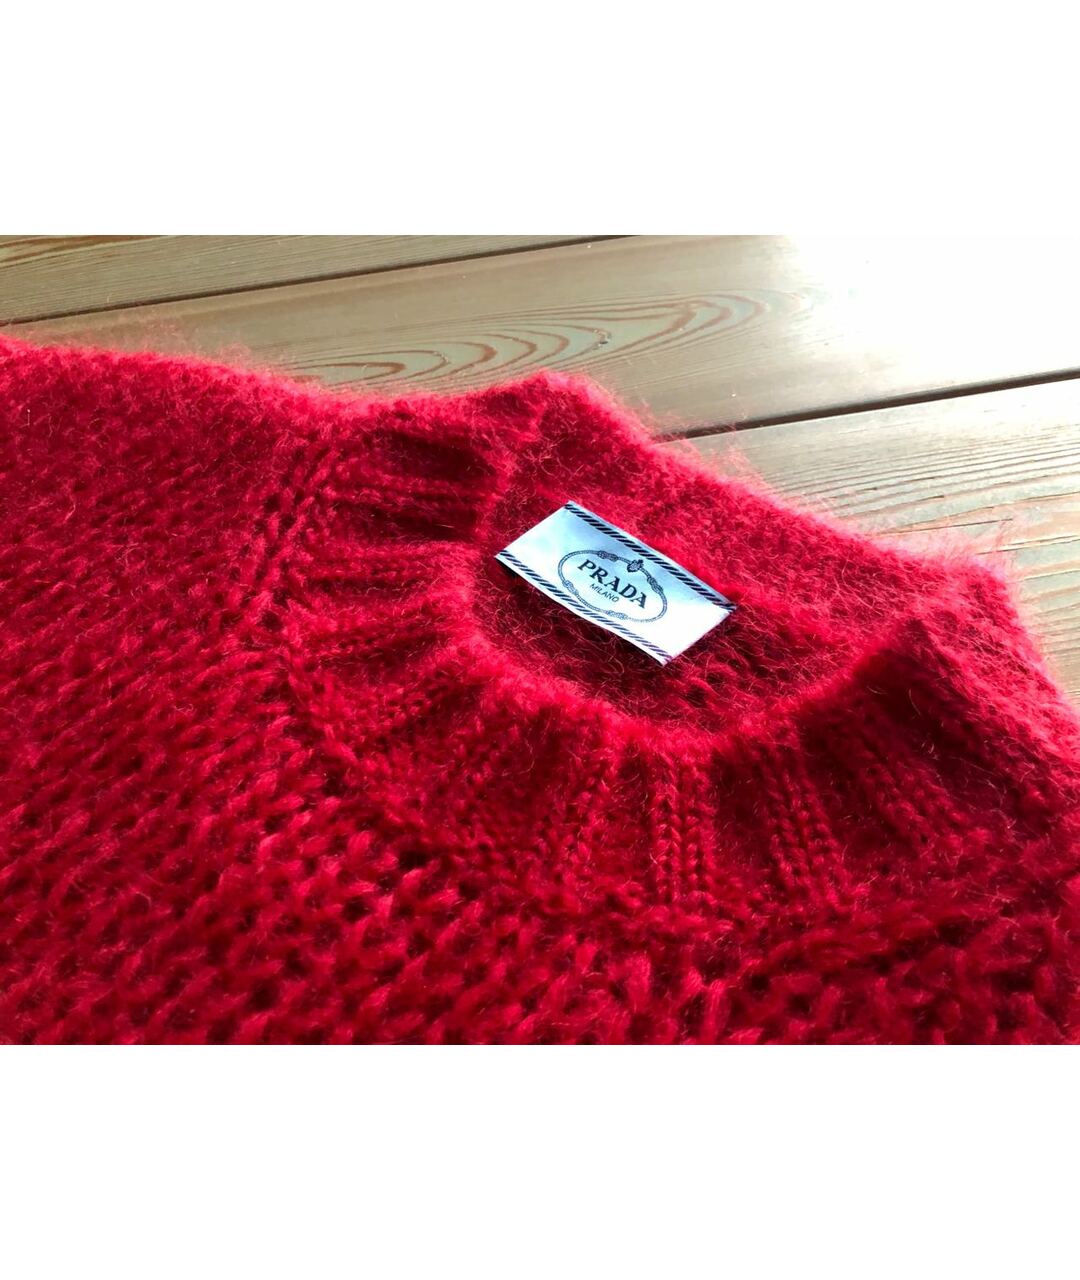 PRADA Красный шерстяной джемпер / свитер, фото 3